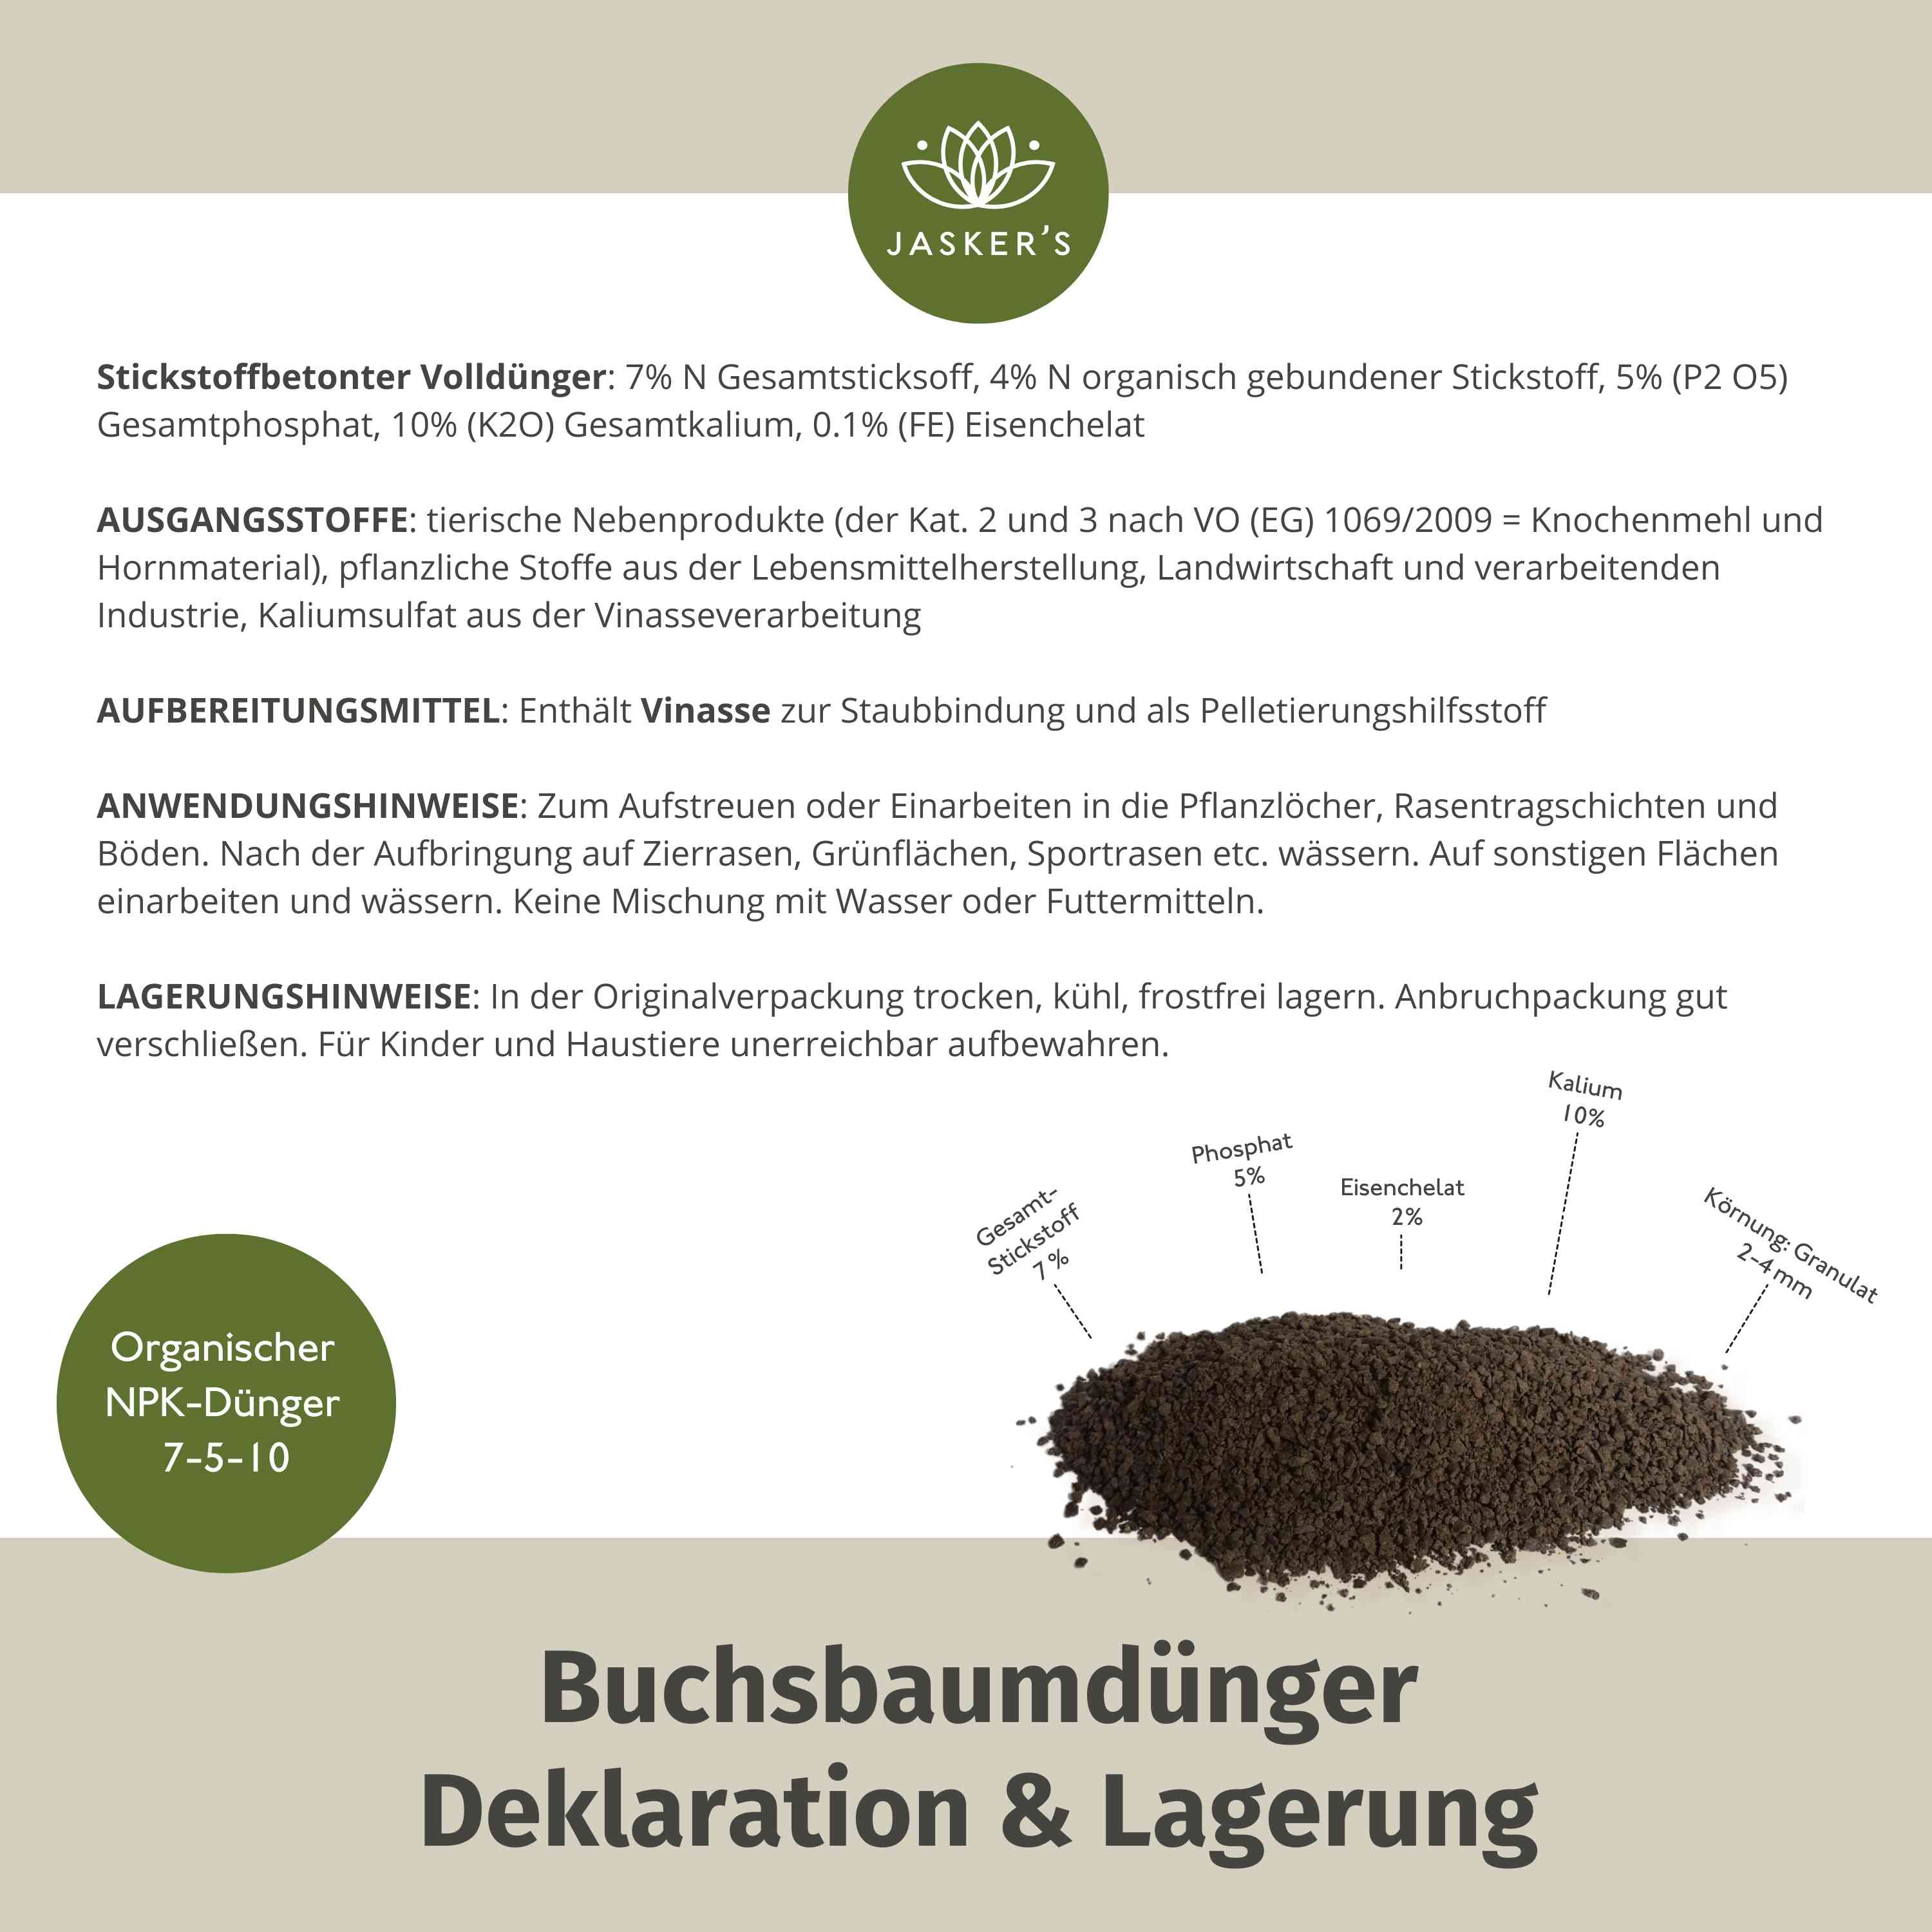 Buchsbaum Dünger 3Kg | Langzeitdünger Für Frischgrünen Buxus